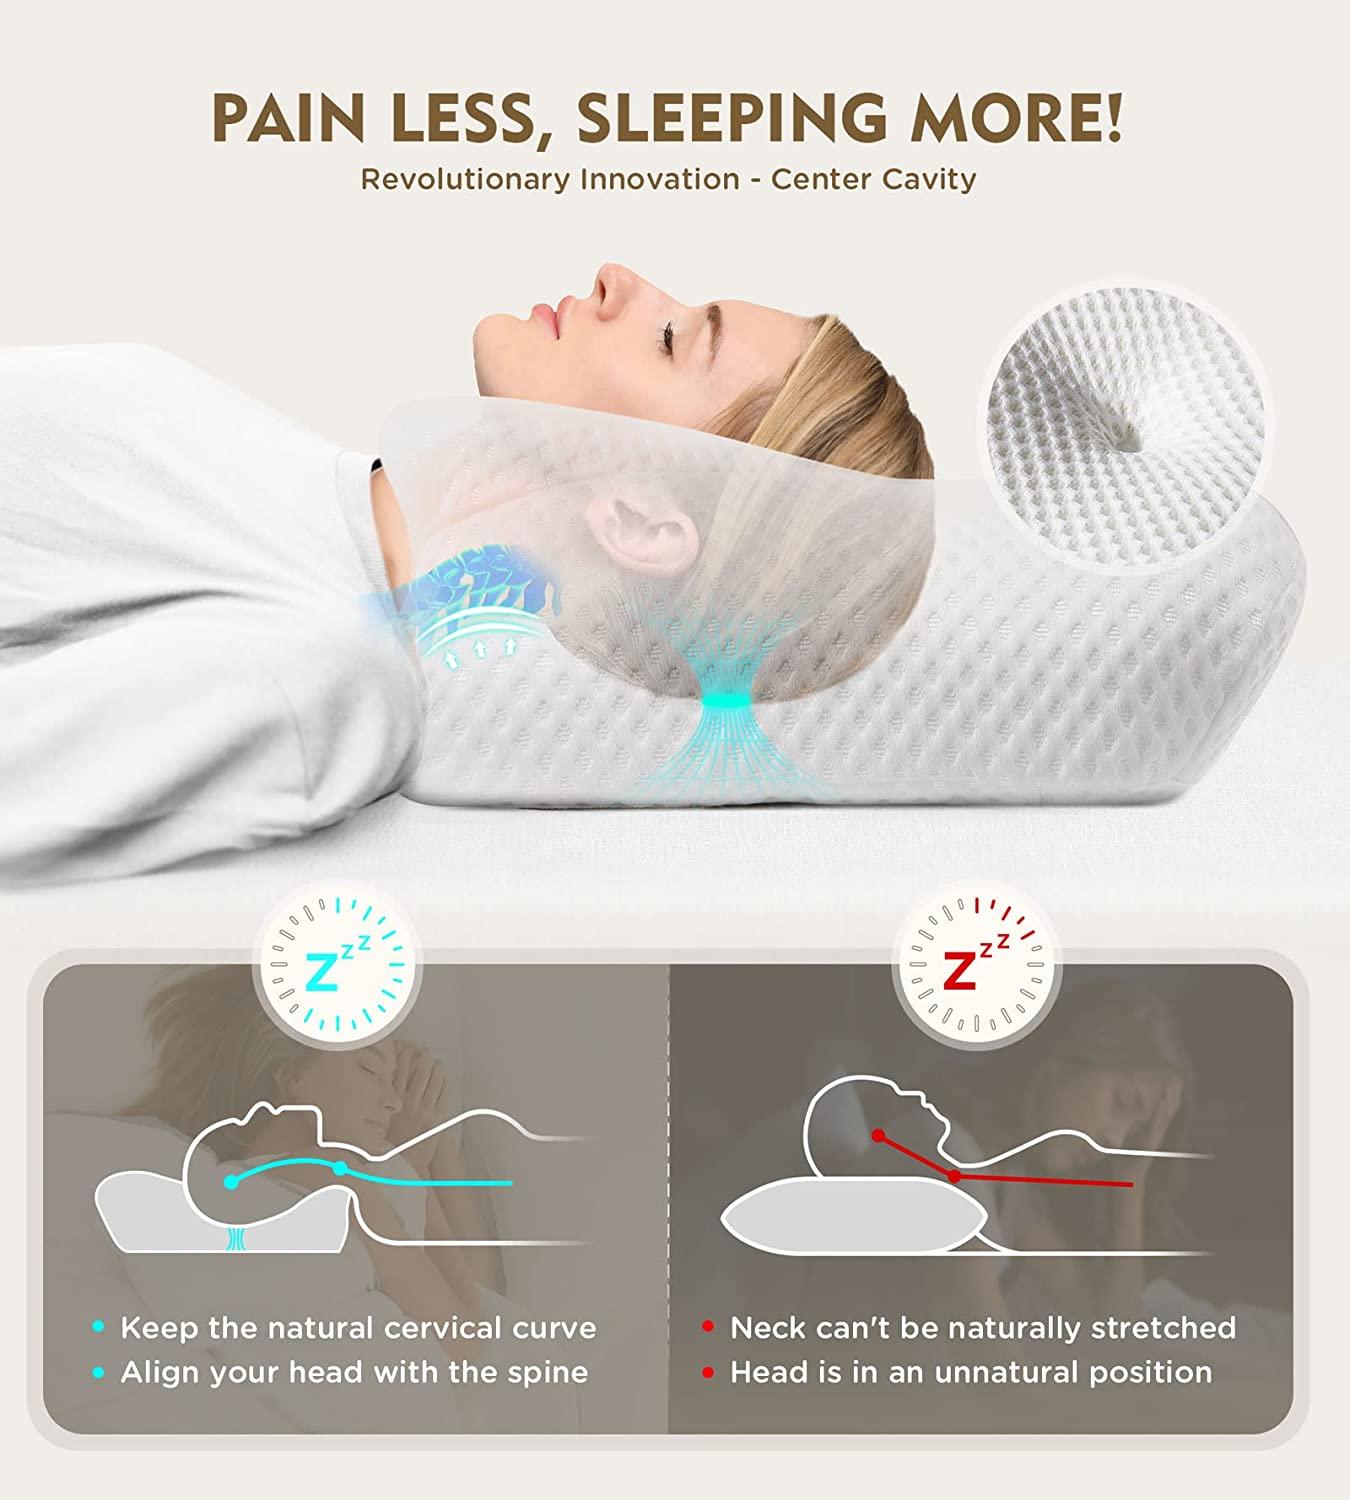 Side Sleeper Cervical Neck Pillow Orthopedic Memory Foam Back